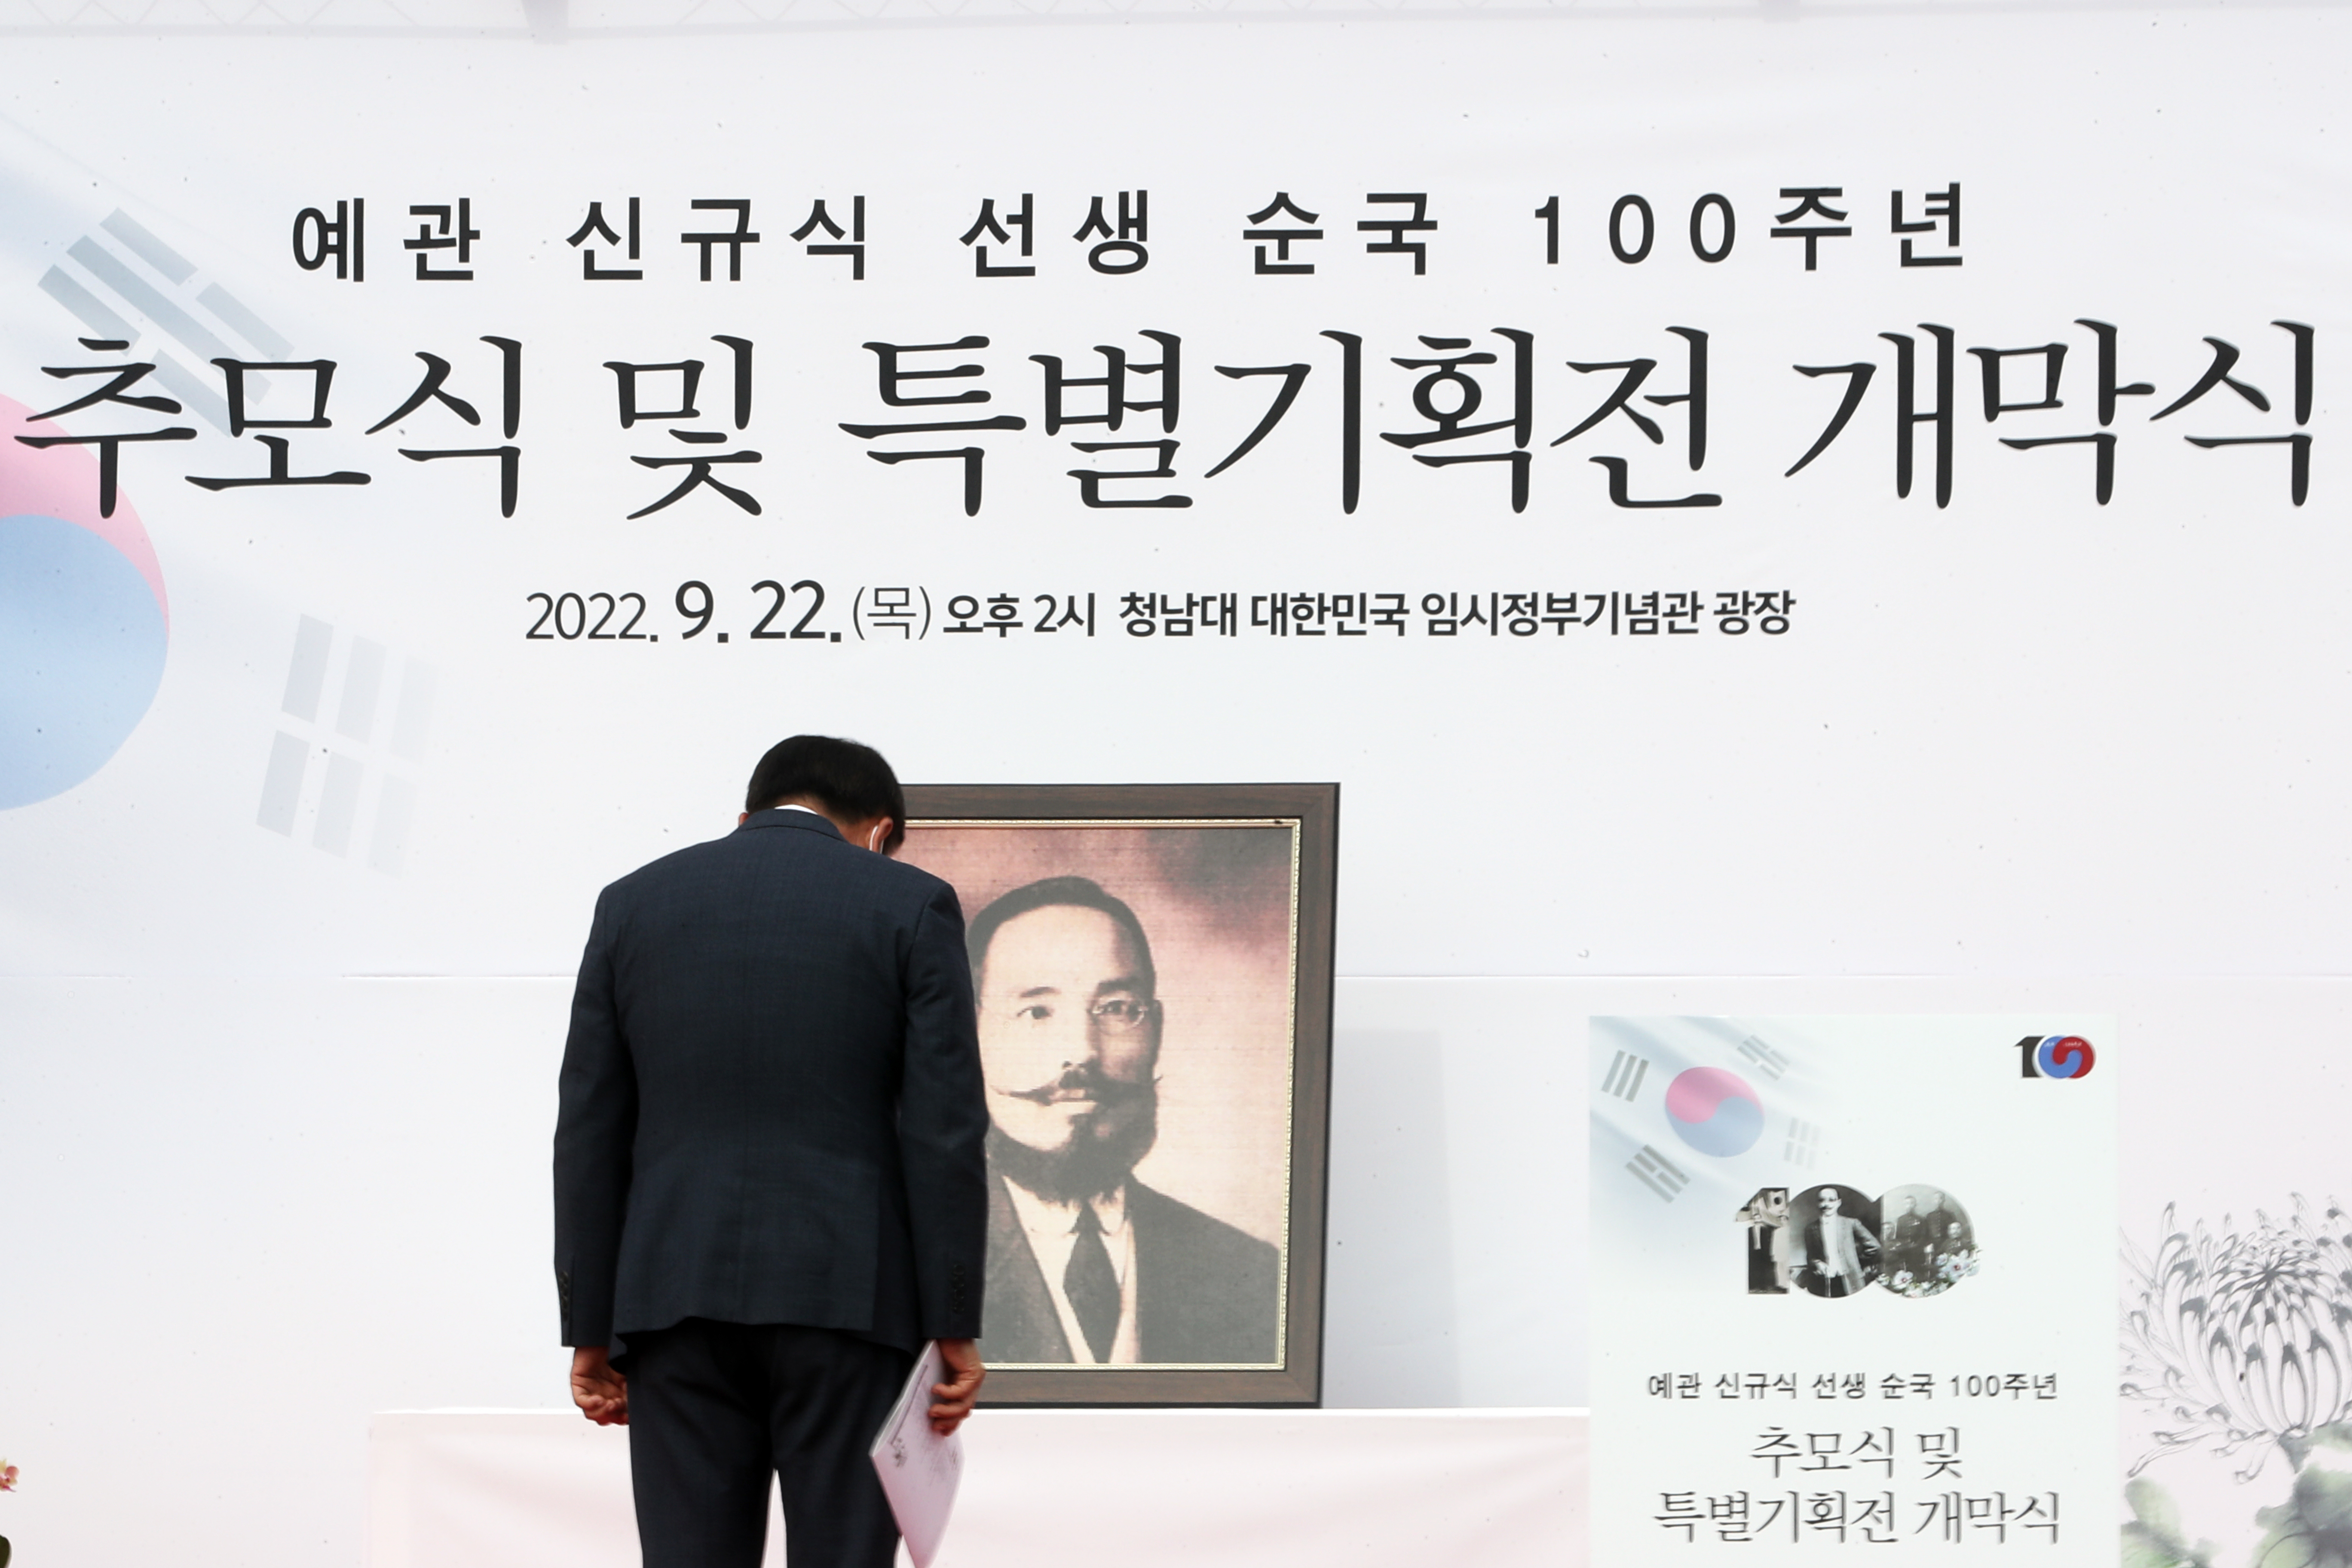 20220922 - 예관 신규식 선생 순국 100주년 추모식 및 특별 기획전 개막식(청남대)